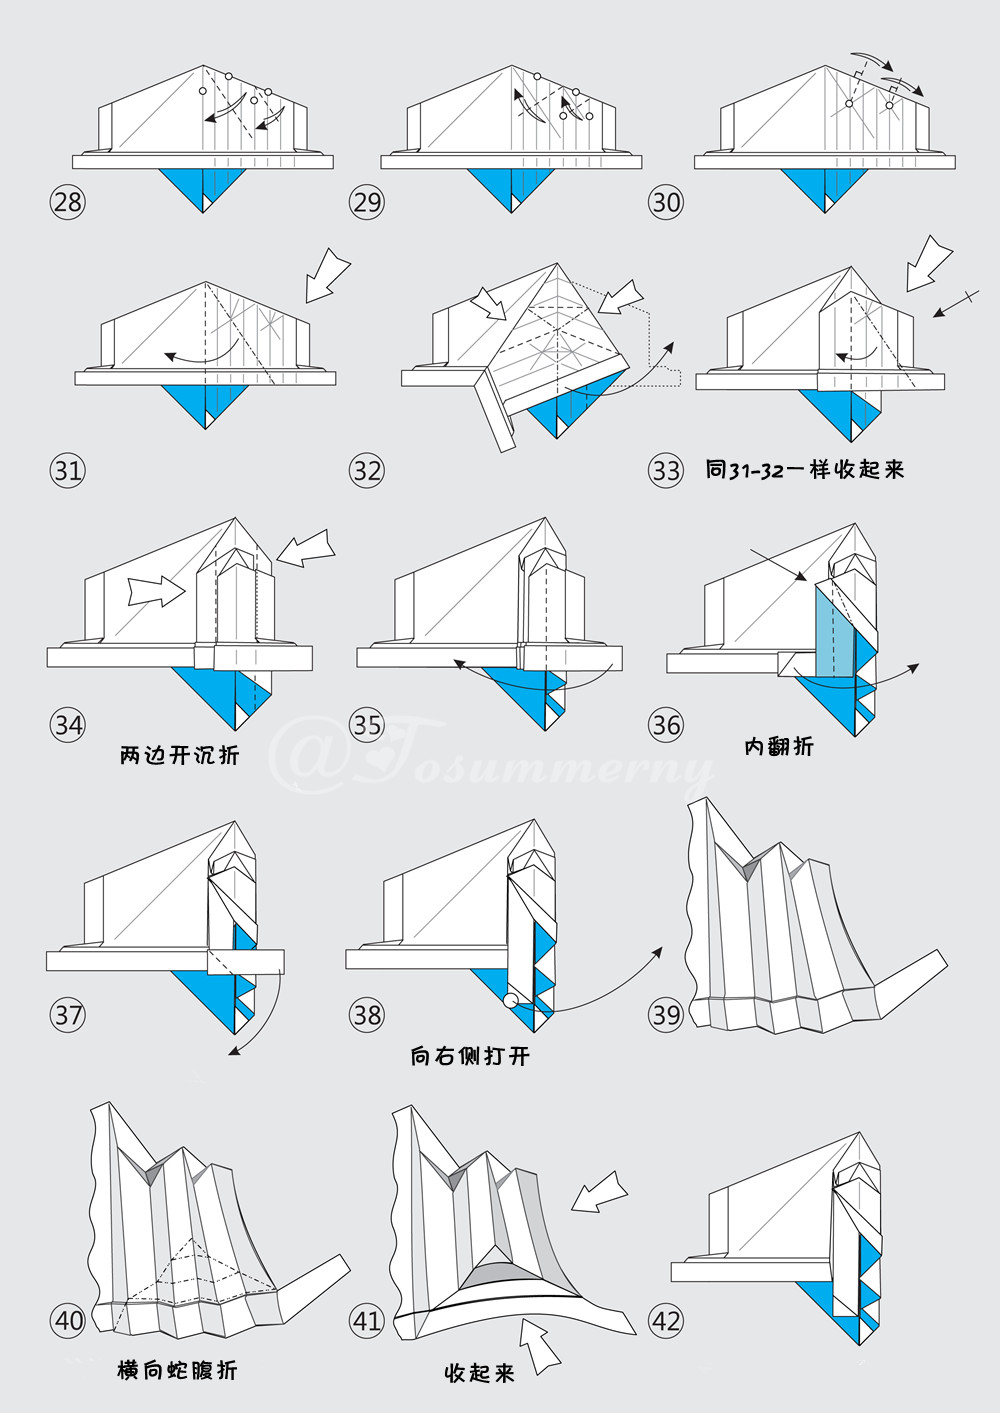 创意折纸机器人,中文版瓦力机器人手工折纸制作图解教程